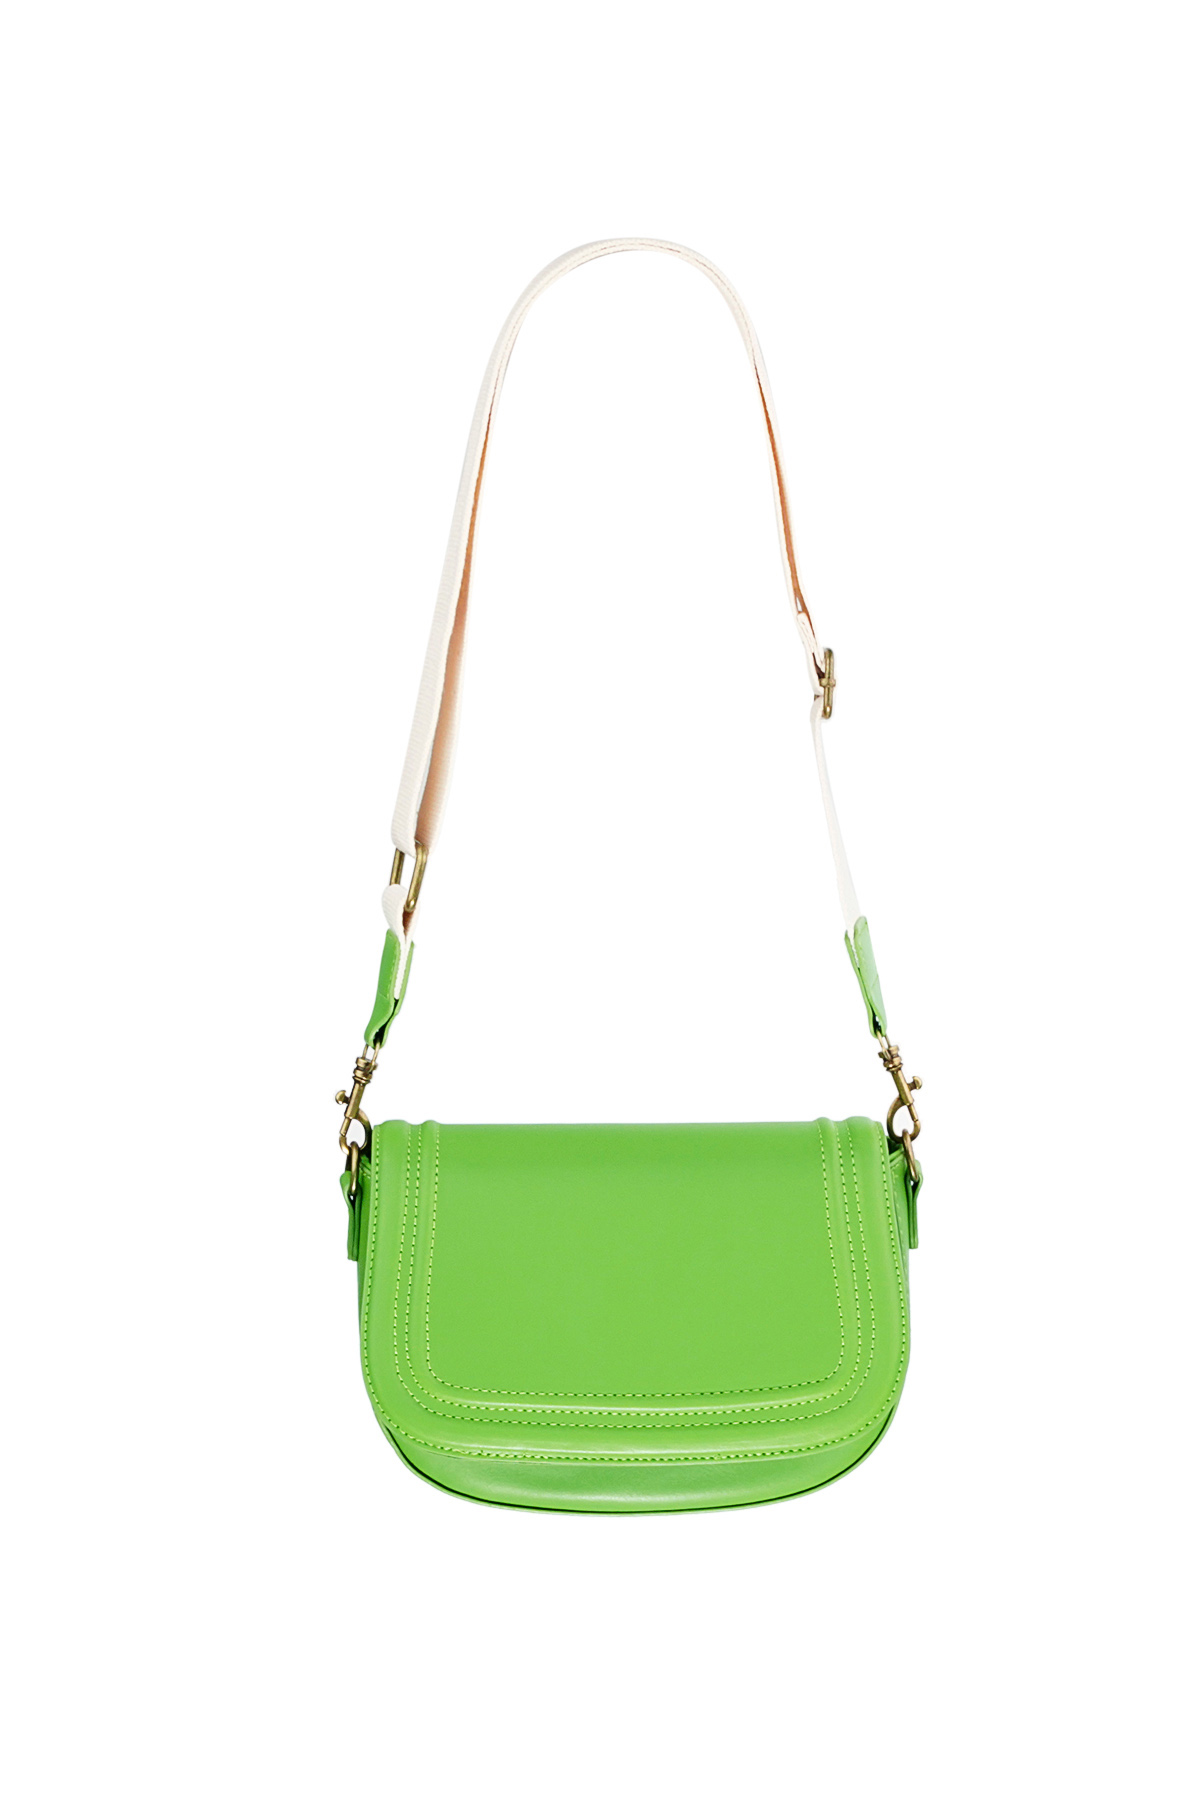 Parlak parlak çanta - yeşil  h5 